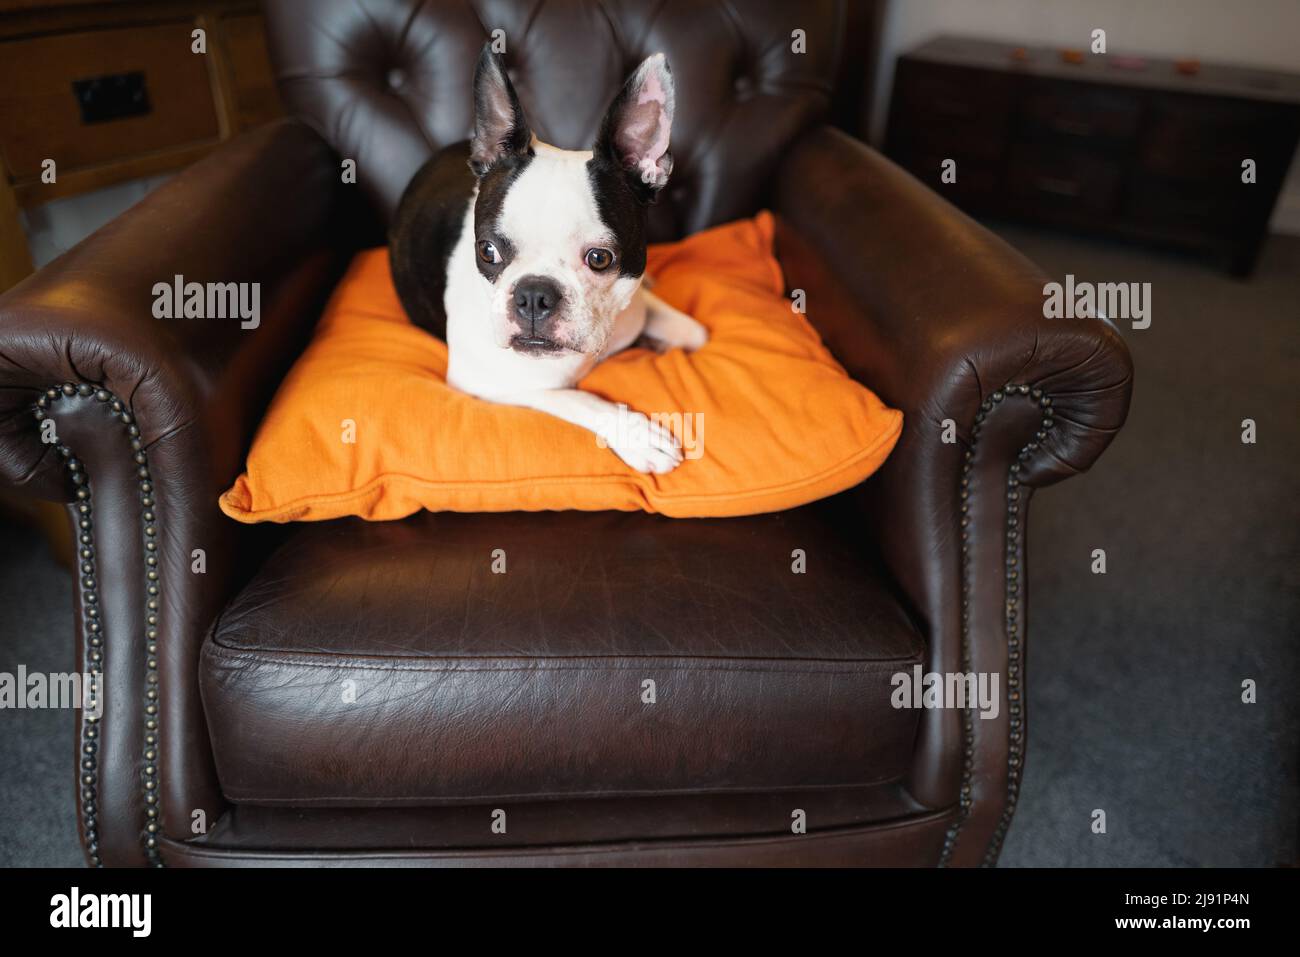 Le jeune Boston Terrier est couché sur un coussin orange au-dessus d'une  chaise en cuir marron de style vintage Photo Stock - Alamy